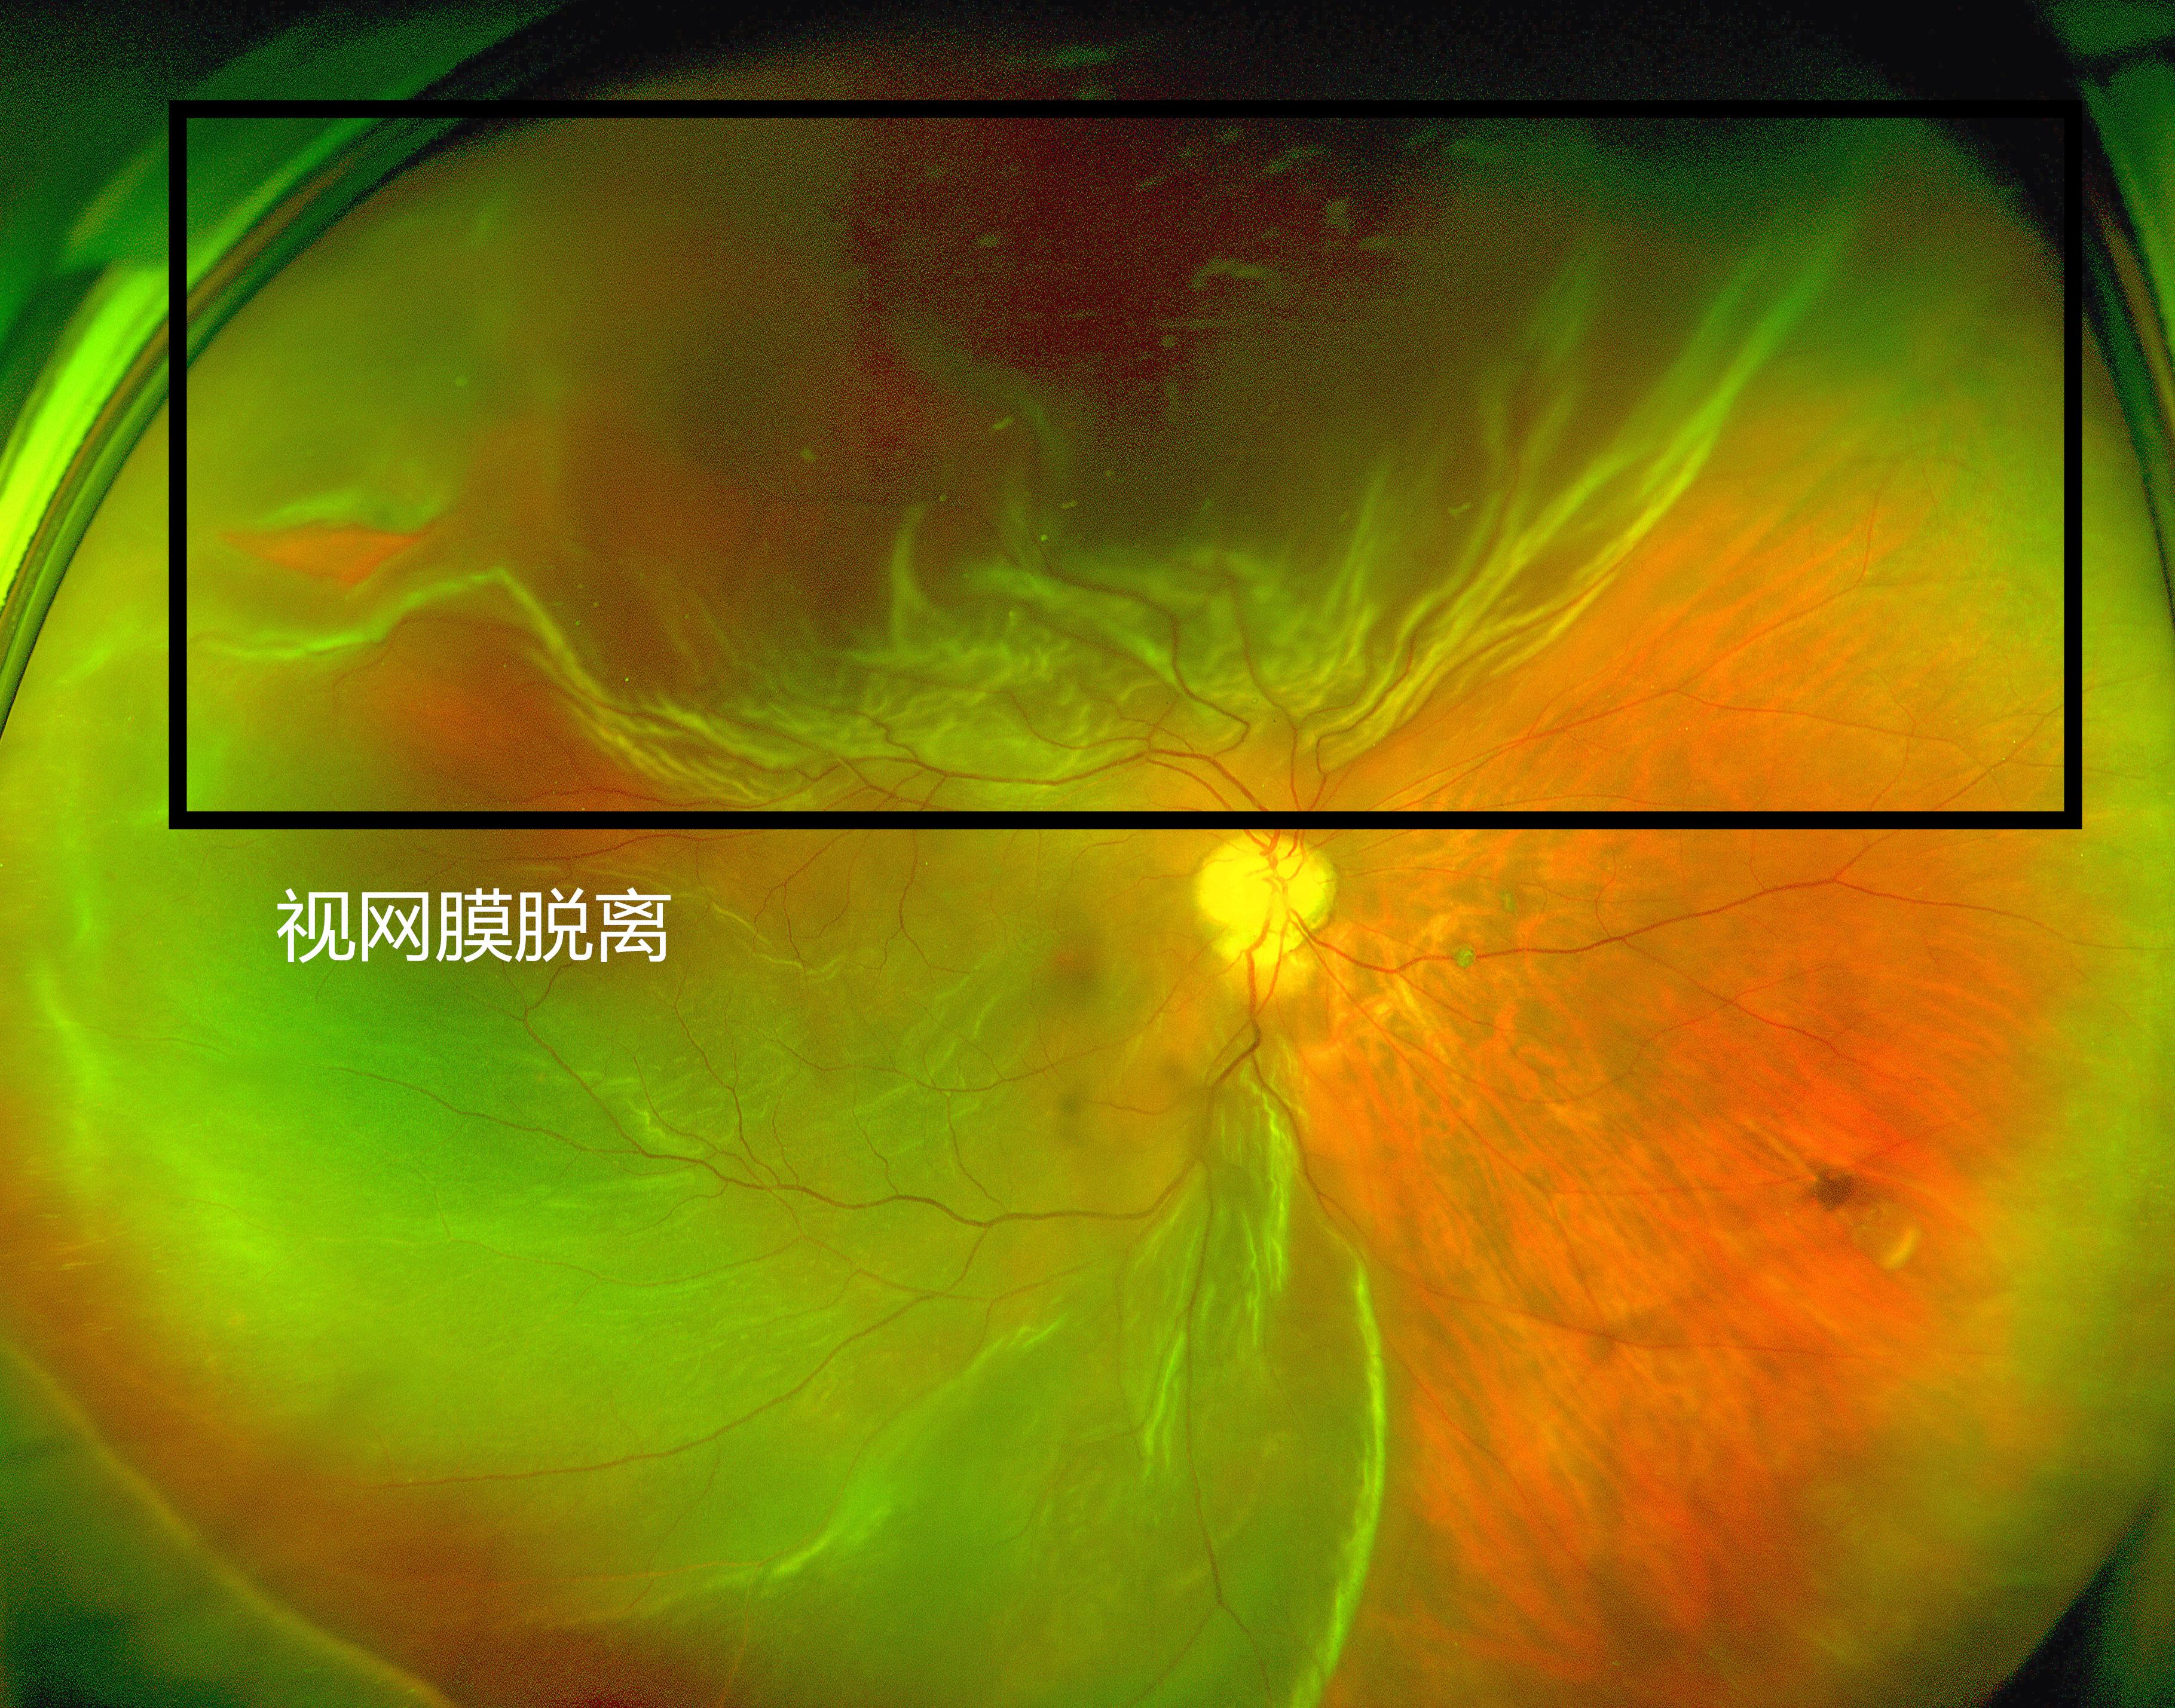 术前欧堡超广角眼底照相检查:视网膜脱离